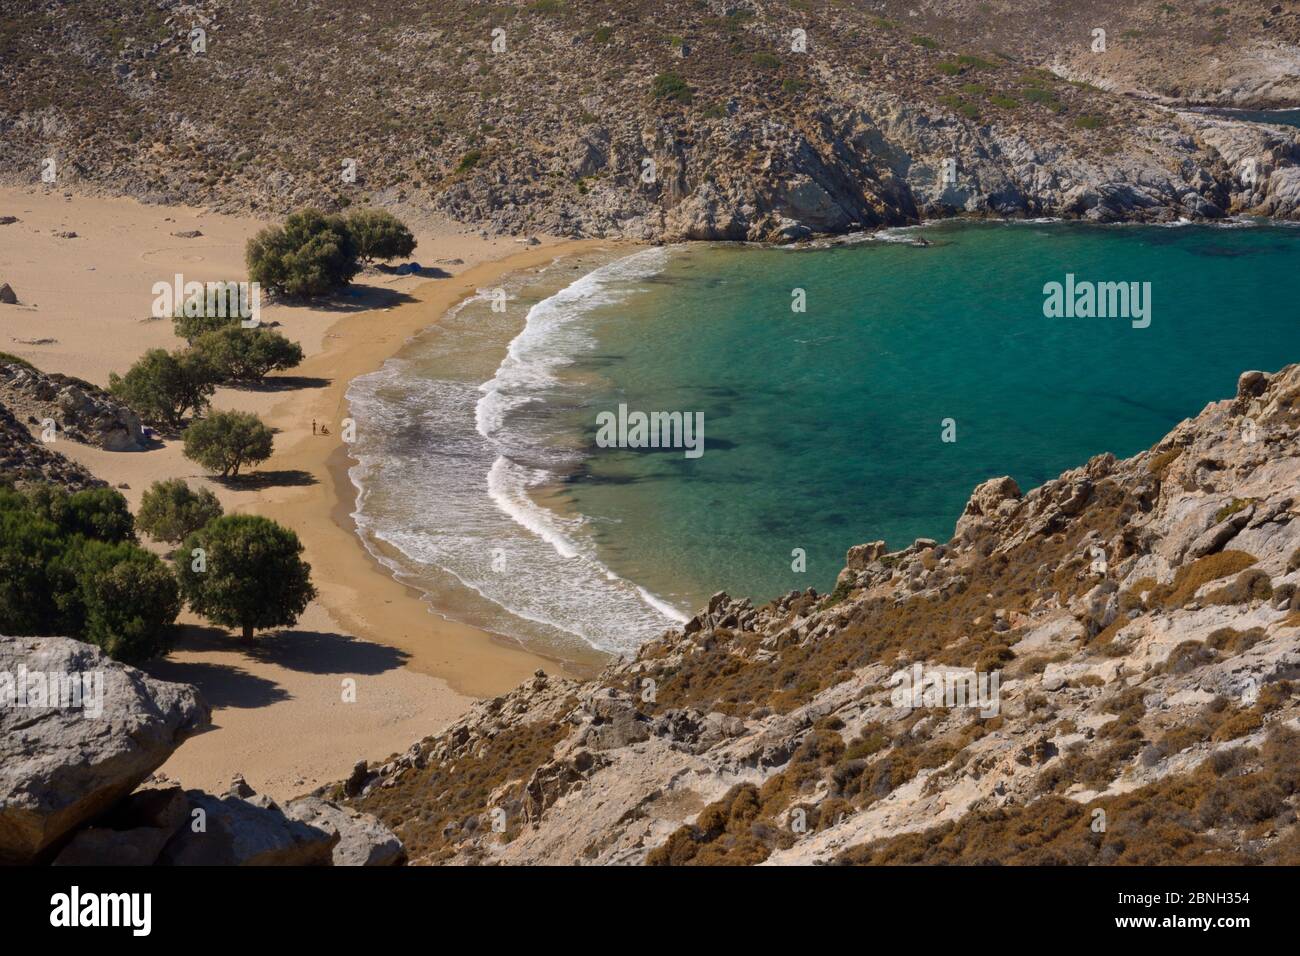 Landschaft von abgelegenen Psili Ammos Strand mit einer Reihe von schattigen Tamarisken / Salz Zeder (Tamarix sp.), Patmos, Dodekanes Inseln, Griechenland, August 2013. Stockfoto